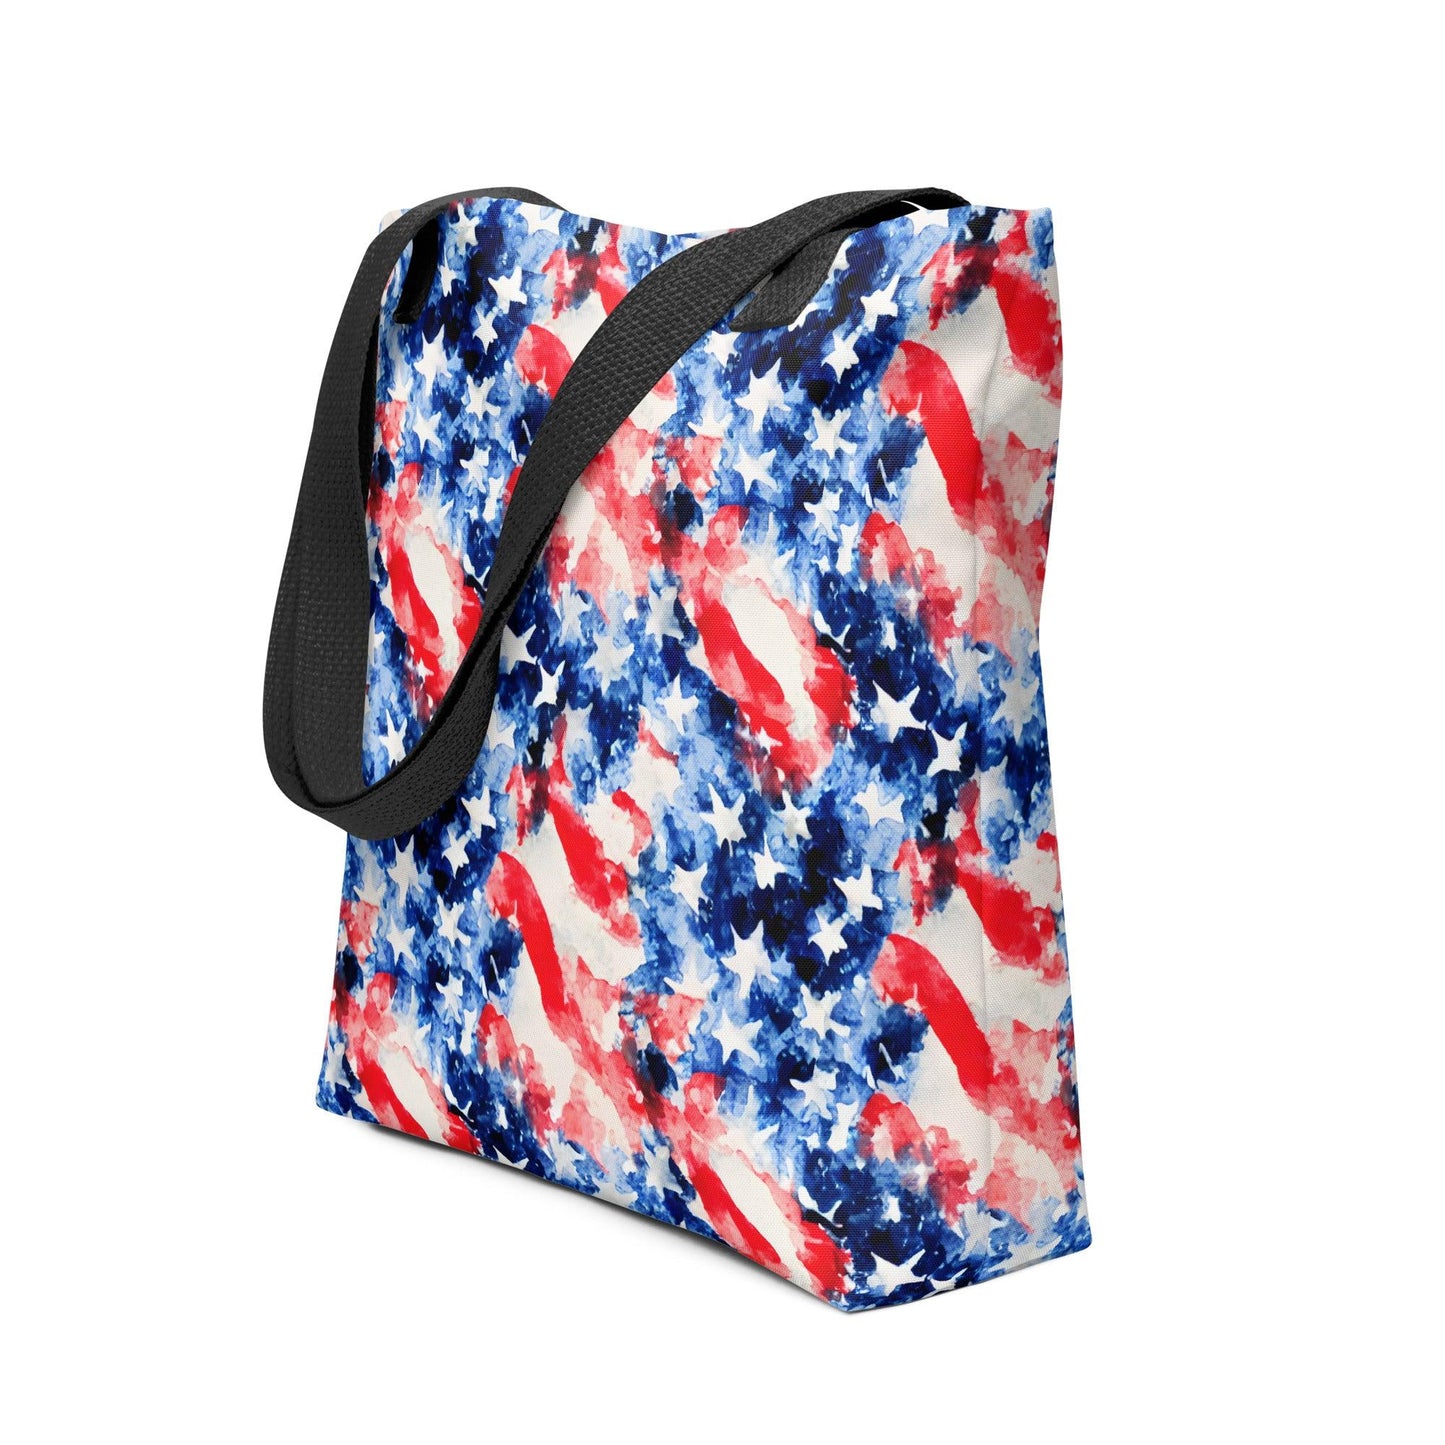 American Flag Tote Bag - The Global Wanderer